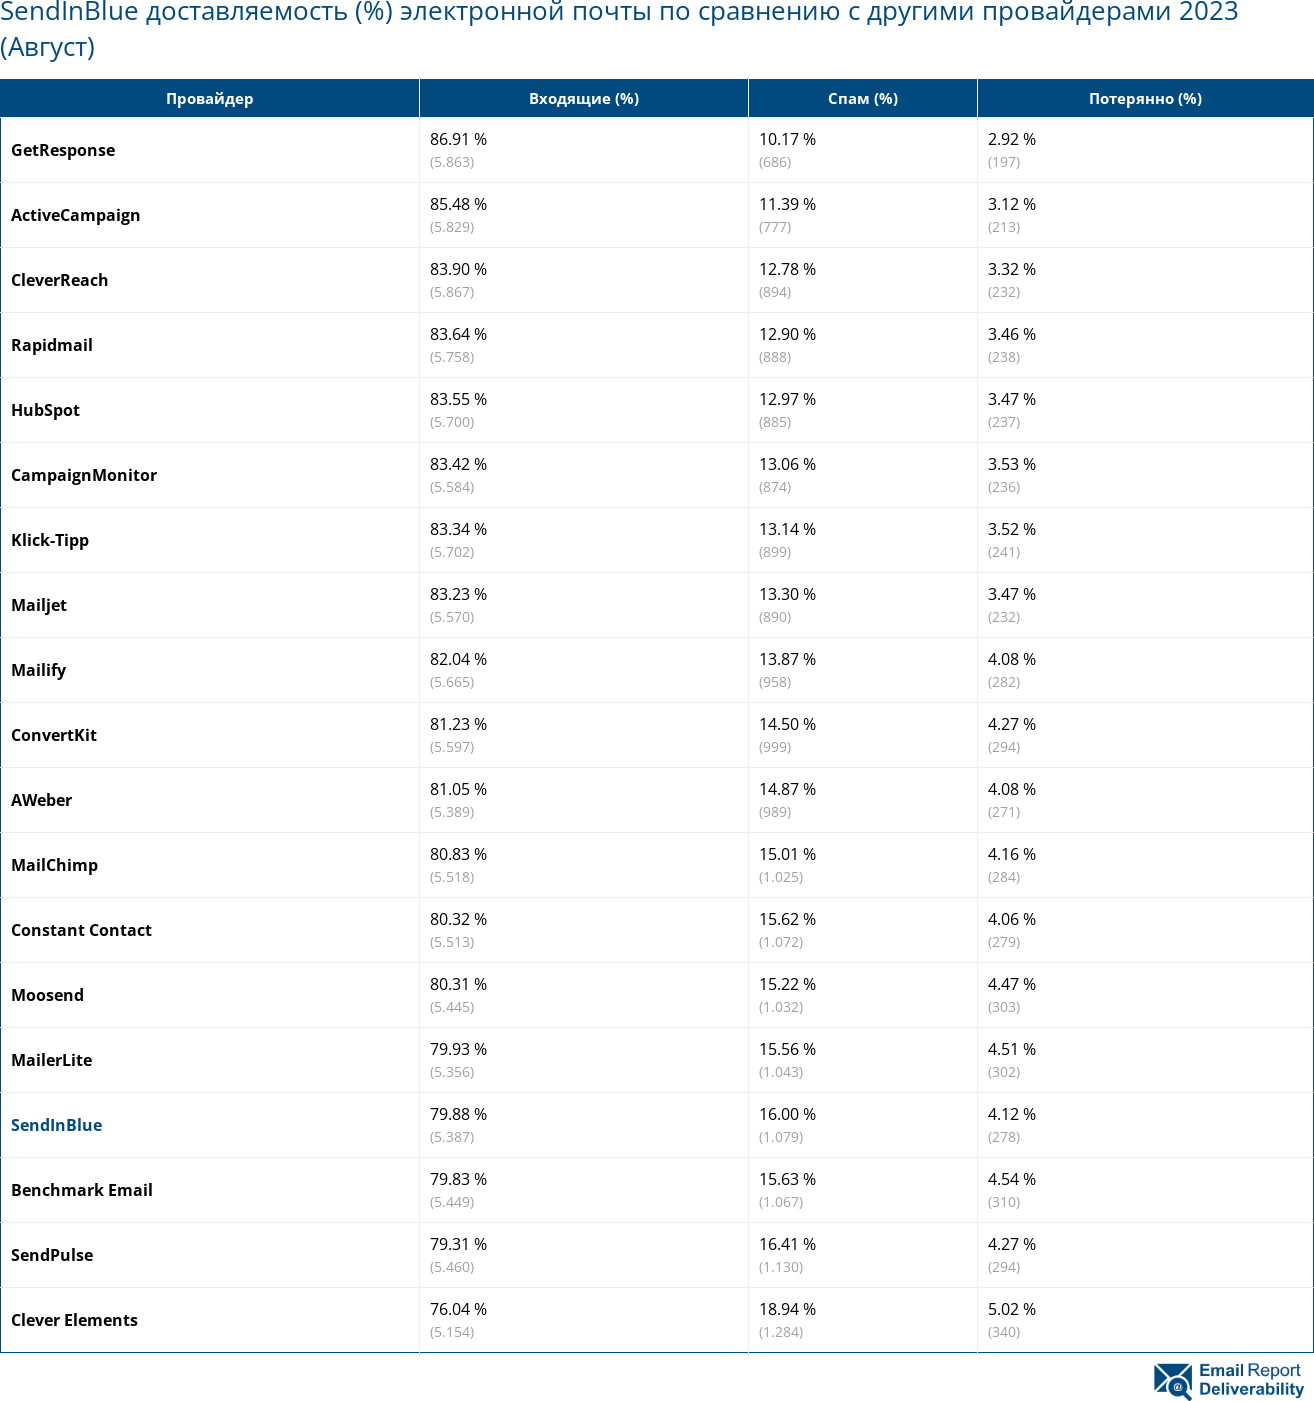 SendInBlue доставляемость (%) электронной почты по сравнению с другими провайдерами 2023 (Август)